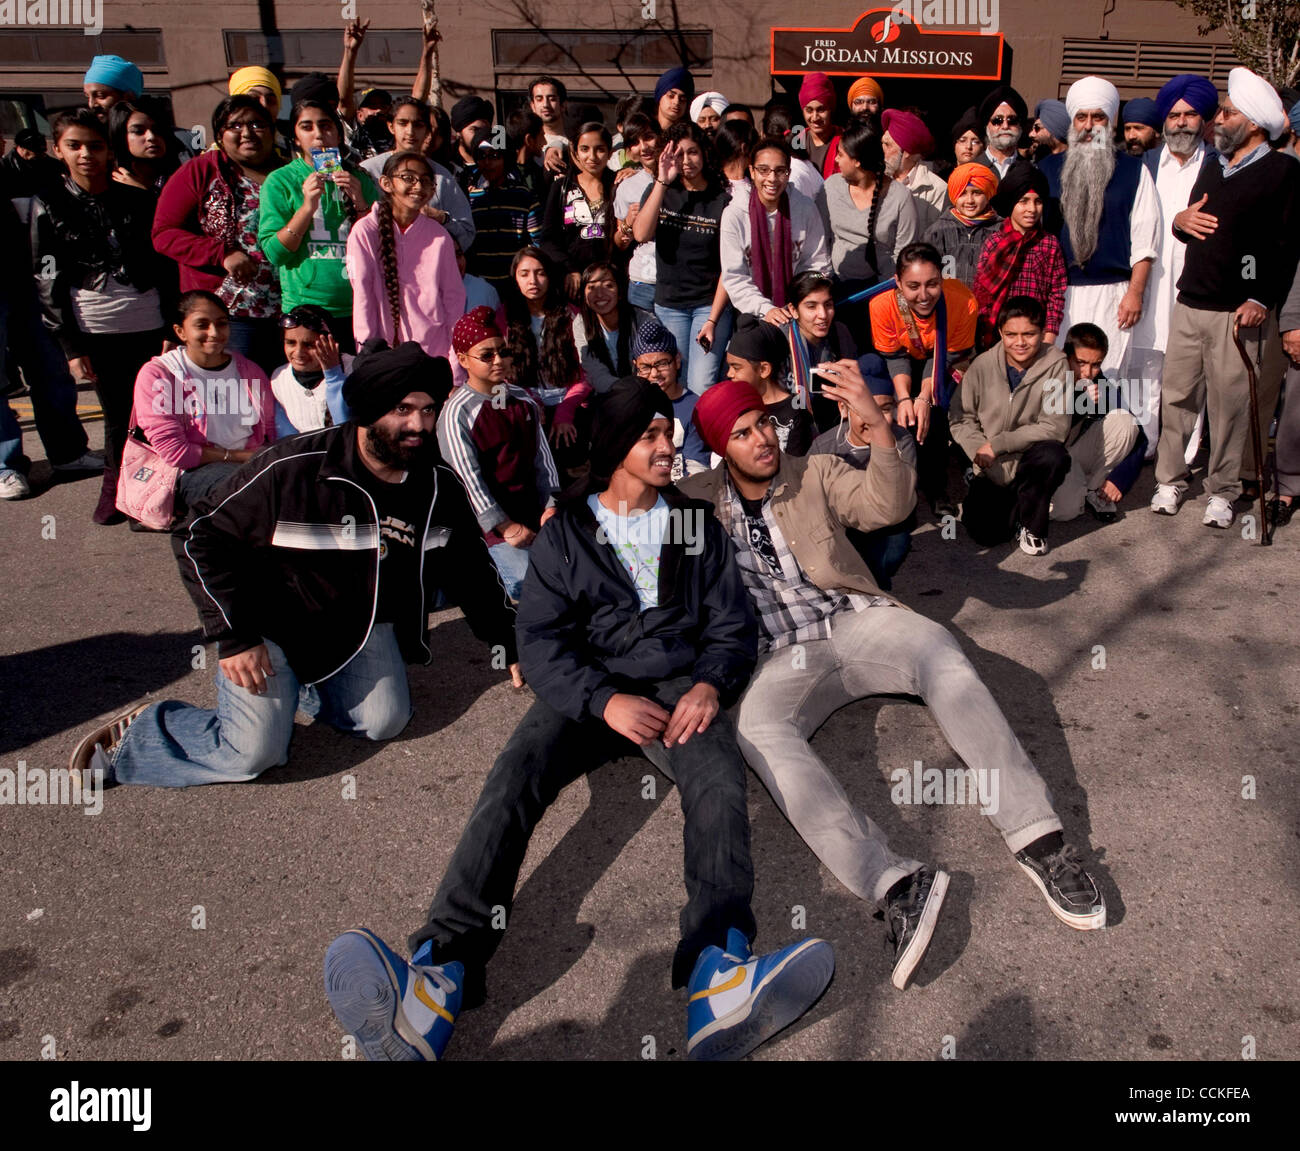 25. November 2010 darstellen - Los Angeles, Kalifornien, USA - Freiwillige aus der Sikh-Gemeinde für ein Gruppenfoto auf dem Fred Jordan Mission 67. jährlichen Thanksgiving-Dinner für 2.400 Arme und obdachlose Kinder, Frauen und Männer auf Skid Row. Stockfoto